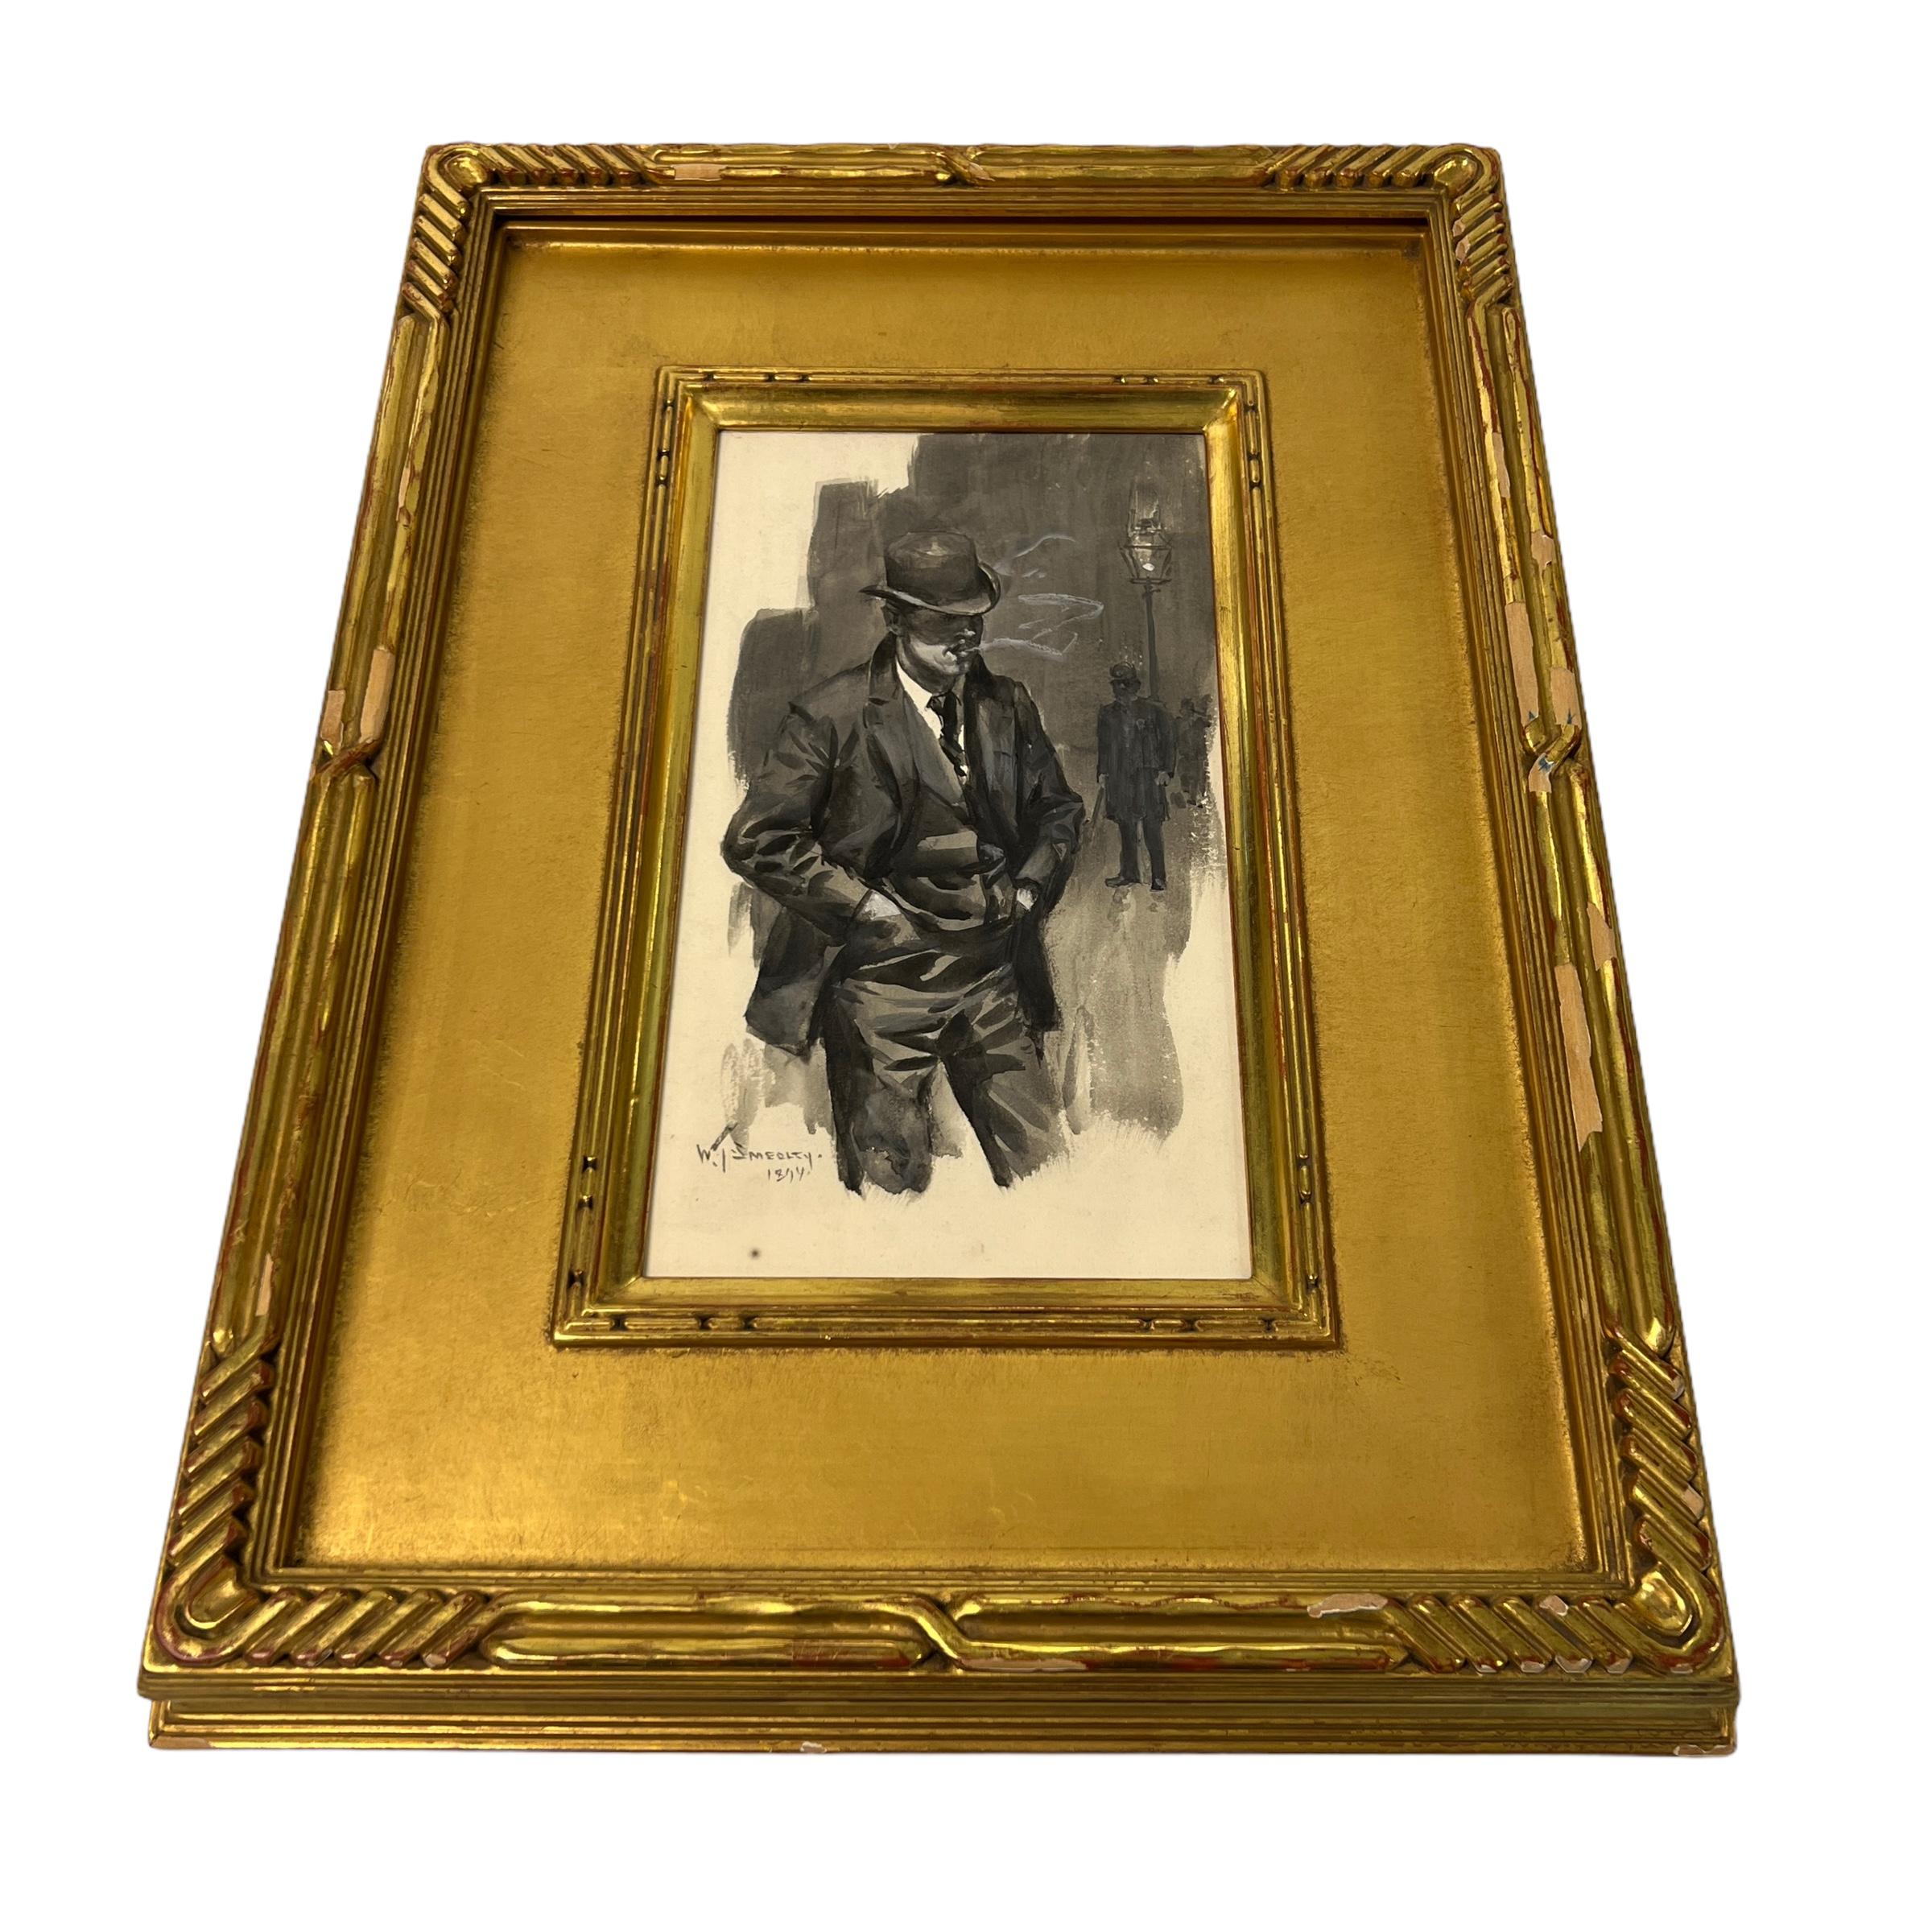 Unser außergewöhnliches Aquarell auf Papier des amerikanischen Malers und Illustrators William Thomas Smedley (1858-1920) zeigt einen distinguierten Gentleman, der neben einer Straßenlaterne raucht. Signiert und datiert 1894. Montiert in einem